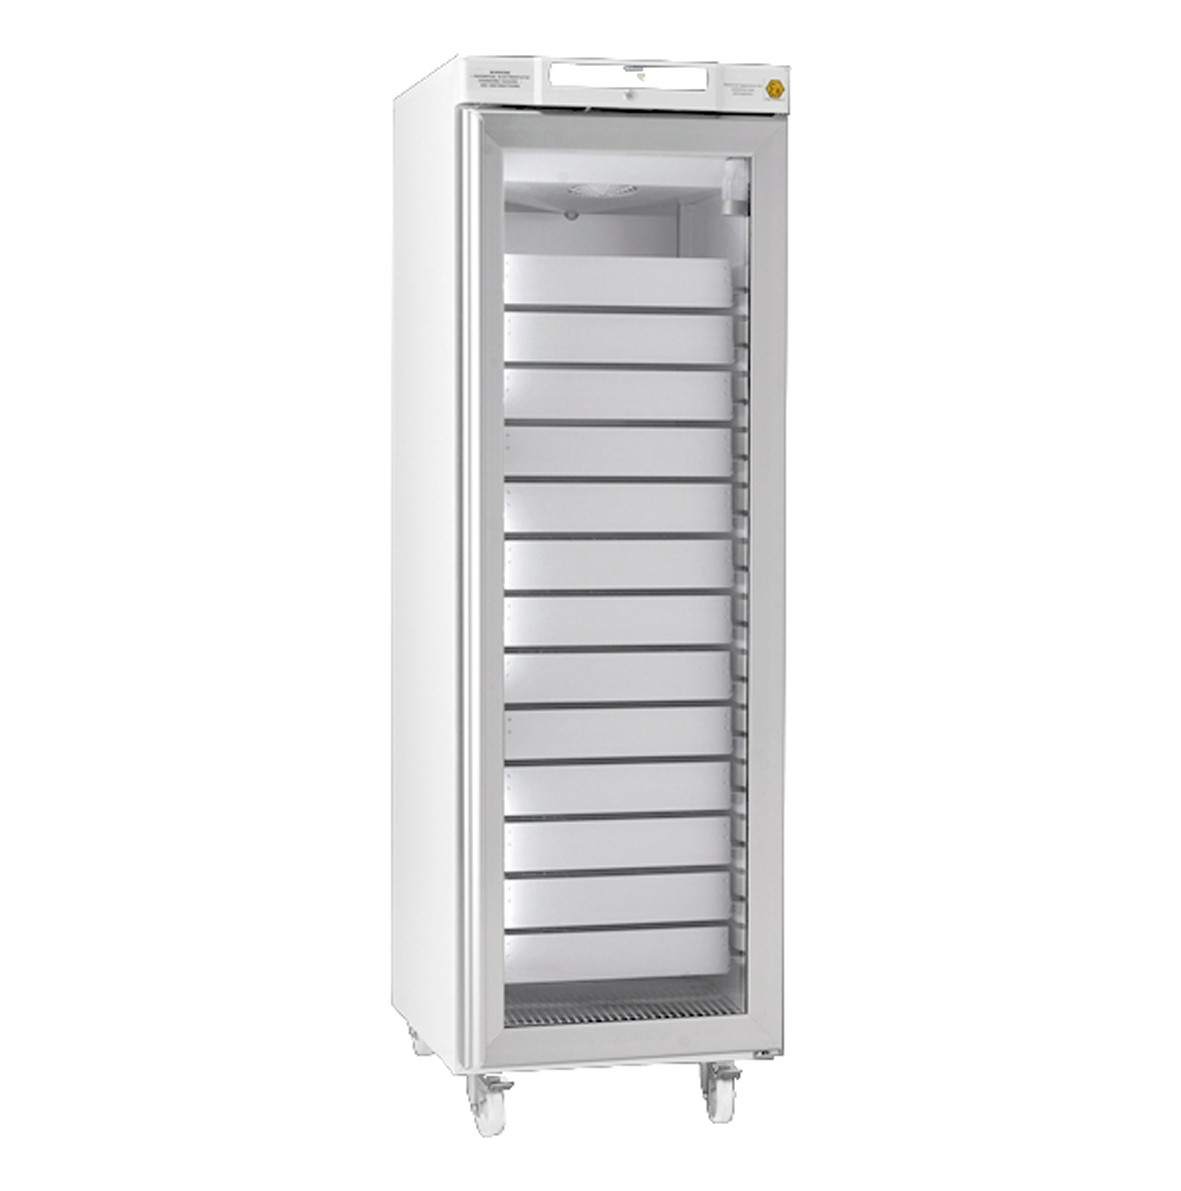 Produktfoto: GRAM Umluft-Kühlschrank BioCompact II RR 410 (346 Liter), weiß, mit Glastür